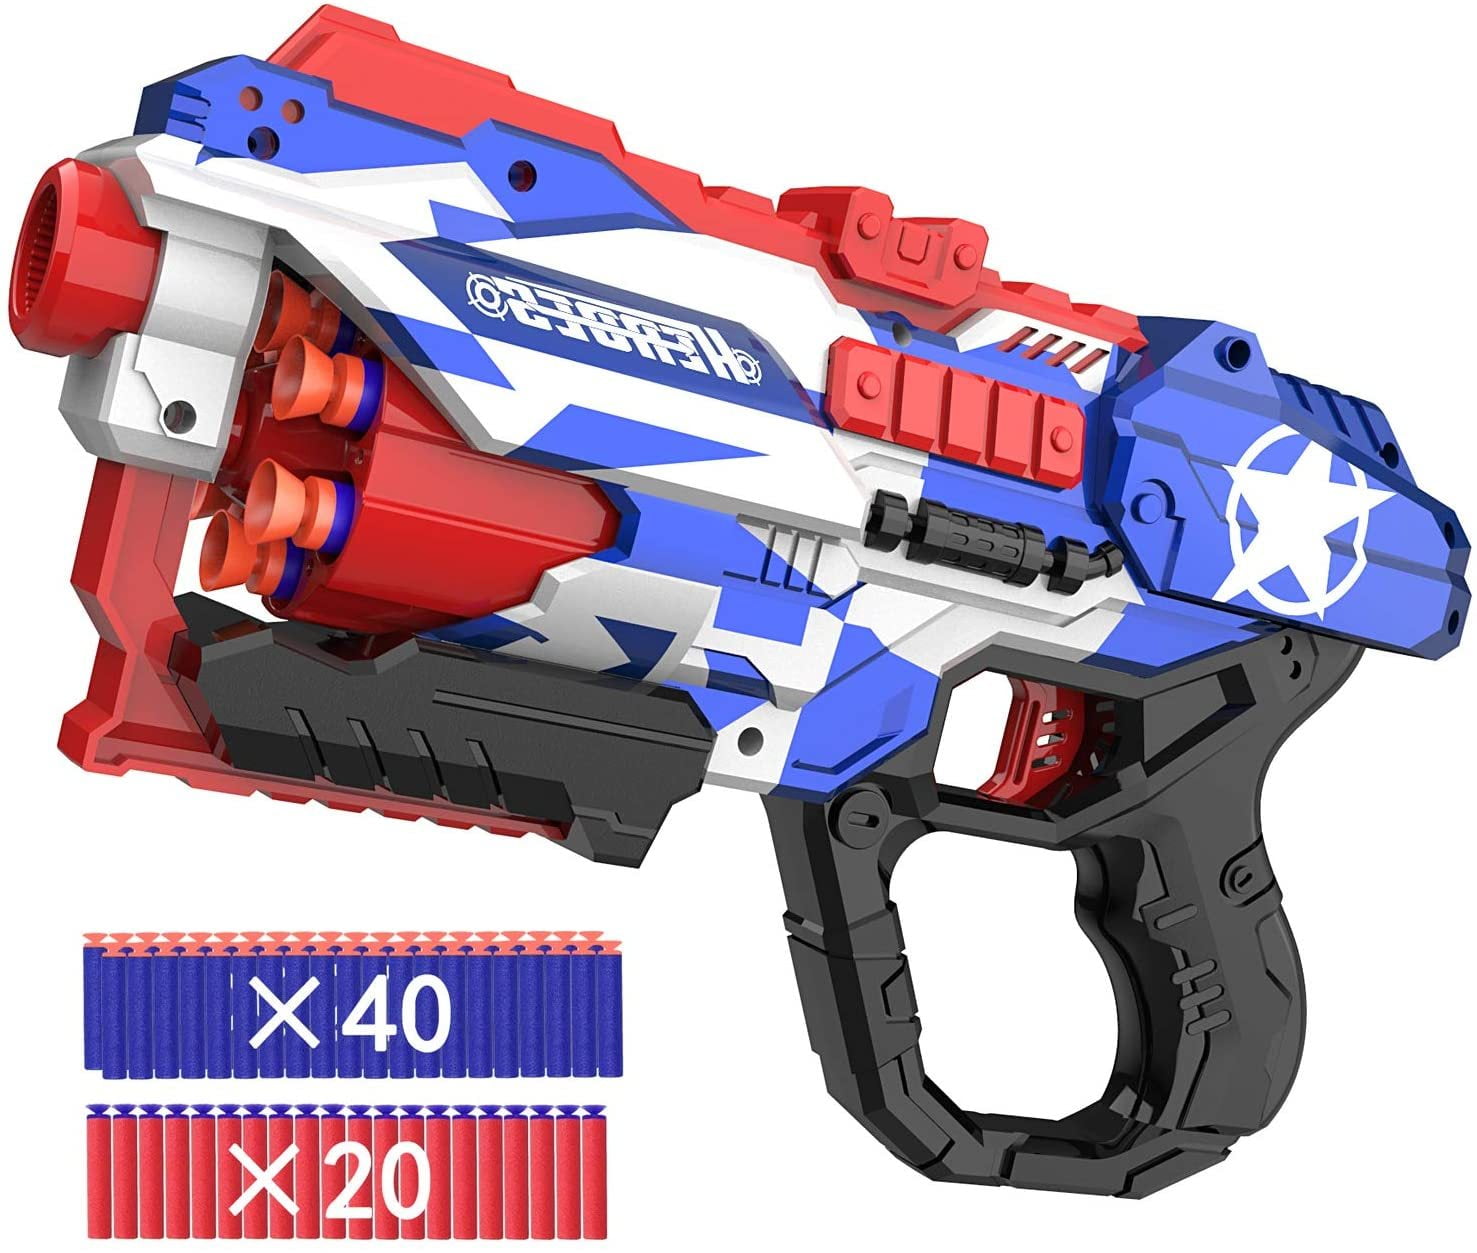 Pop-Up Game Target for Kids Nerf Gun Soft Pellet Gun Practice New Free Shipping 